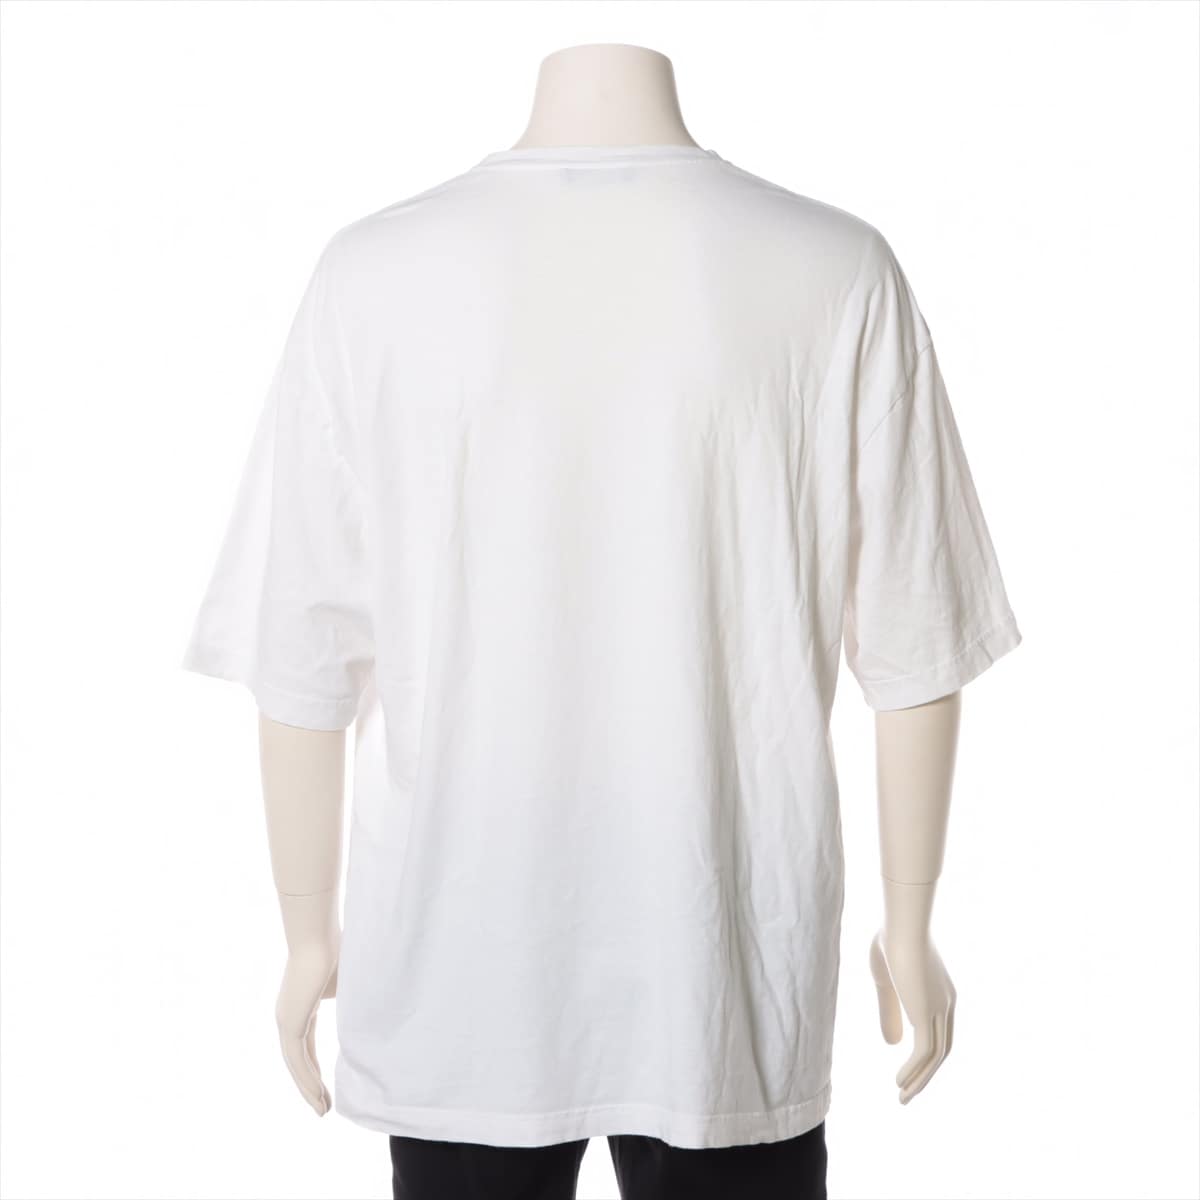 バレンシアガ 18年 コットン Tシャツ M メンズ ホワイト  570803 BBロゴ